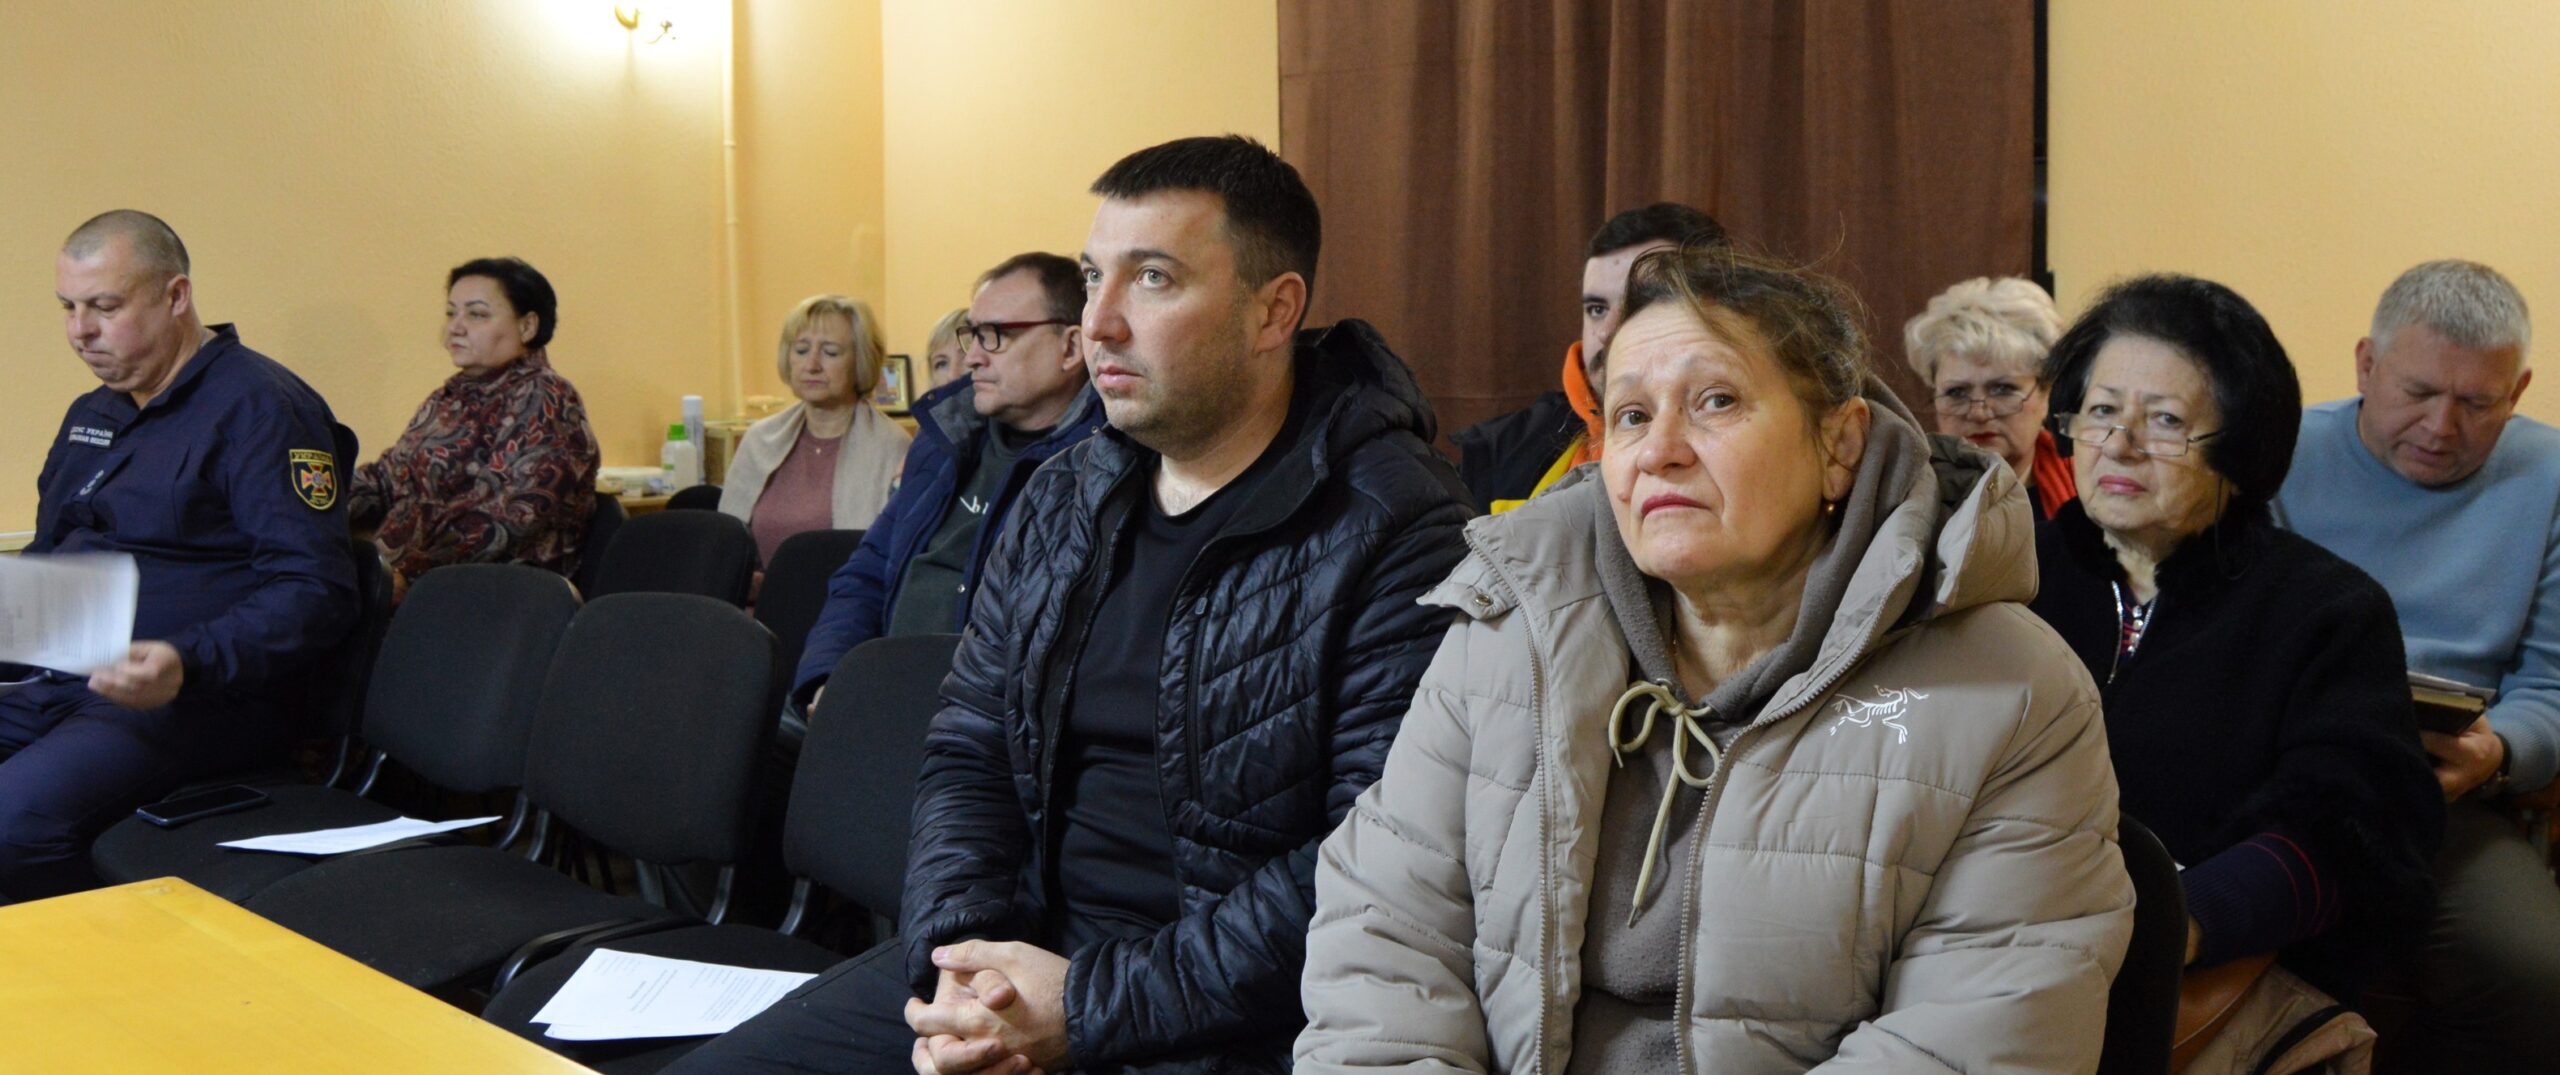 Надзвичайна протиепізоотична комісія зняла карантинні обмеження по сказу в одному із сіл Білгород-Дністровщини